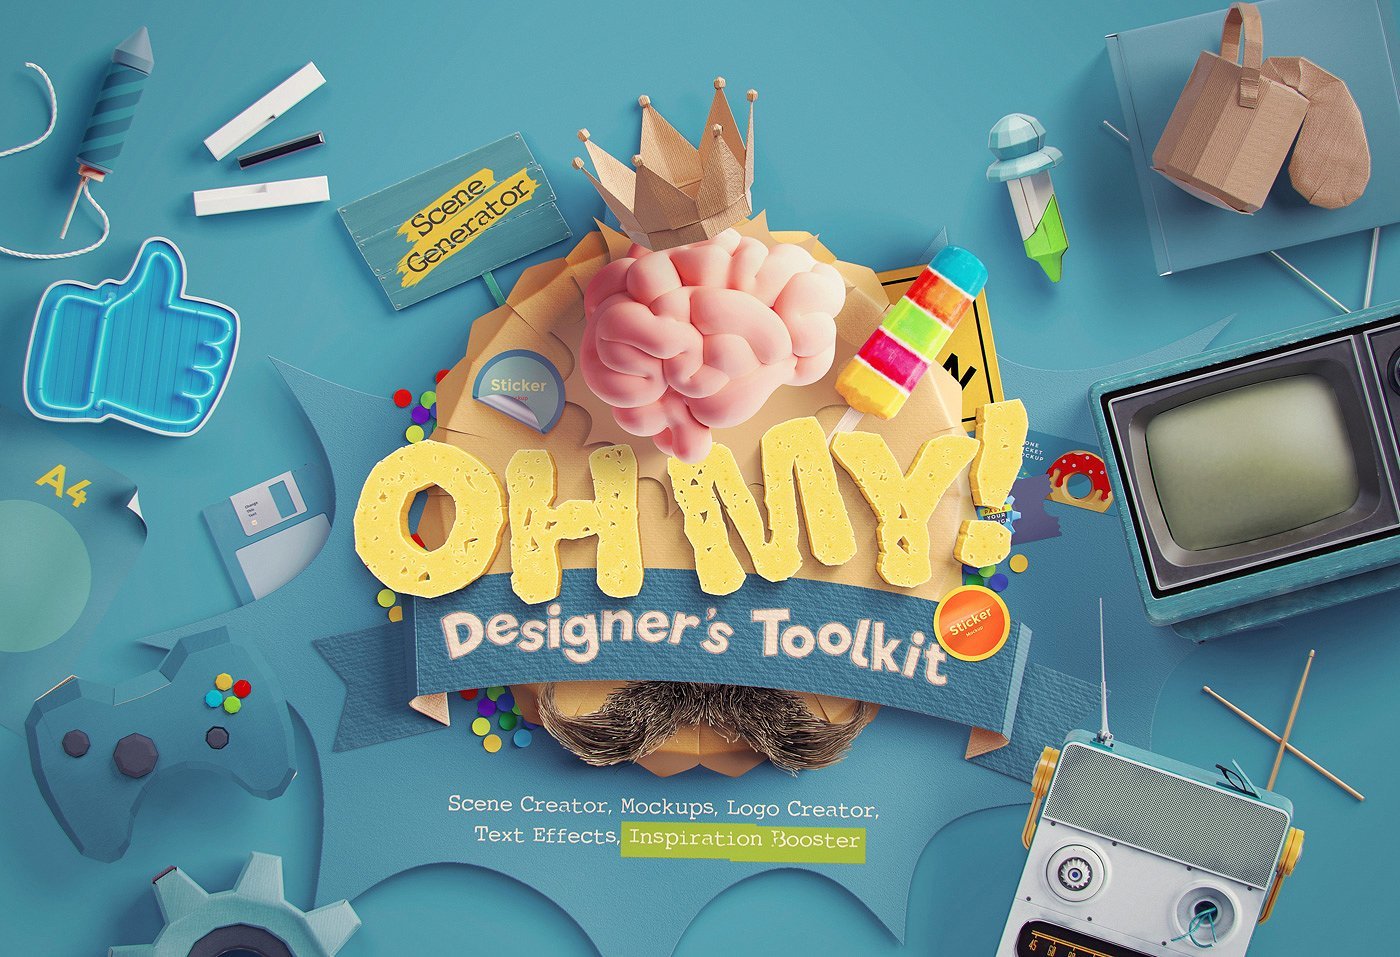 （新）3D大型视觉冲击PS场景模型样机设计师工具包 OhMy! Designer's Toolkit（3044）